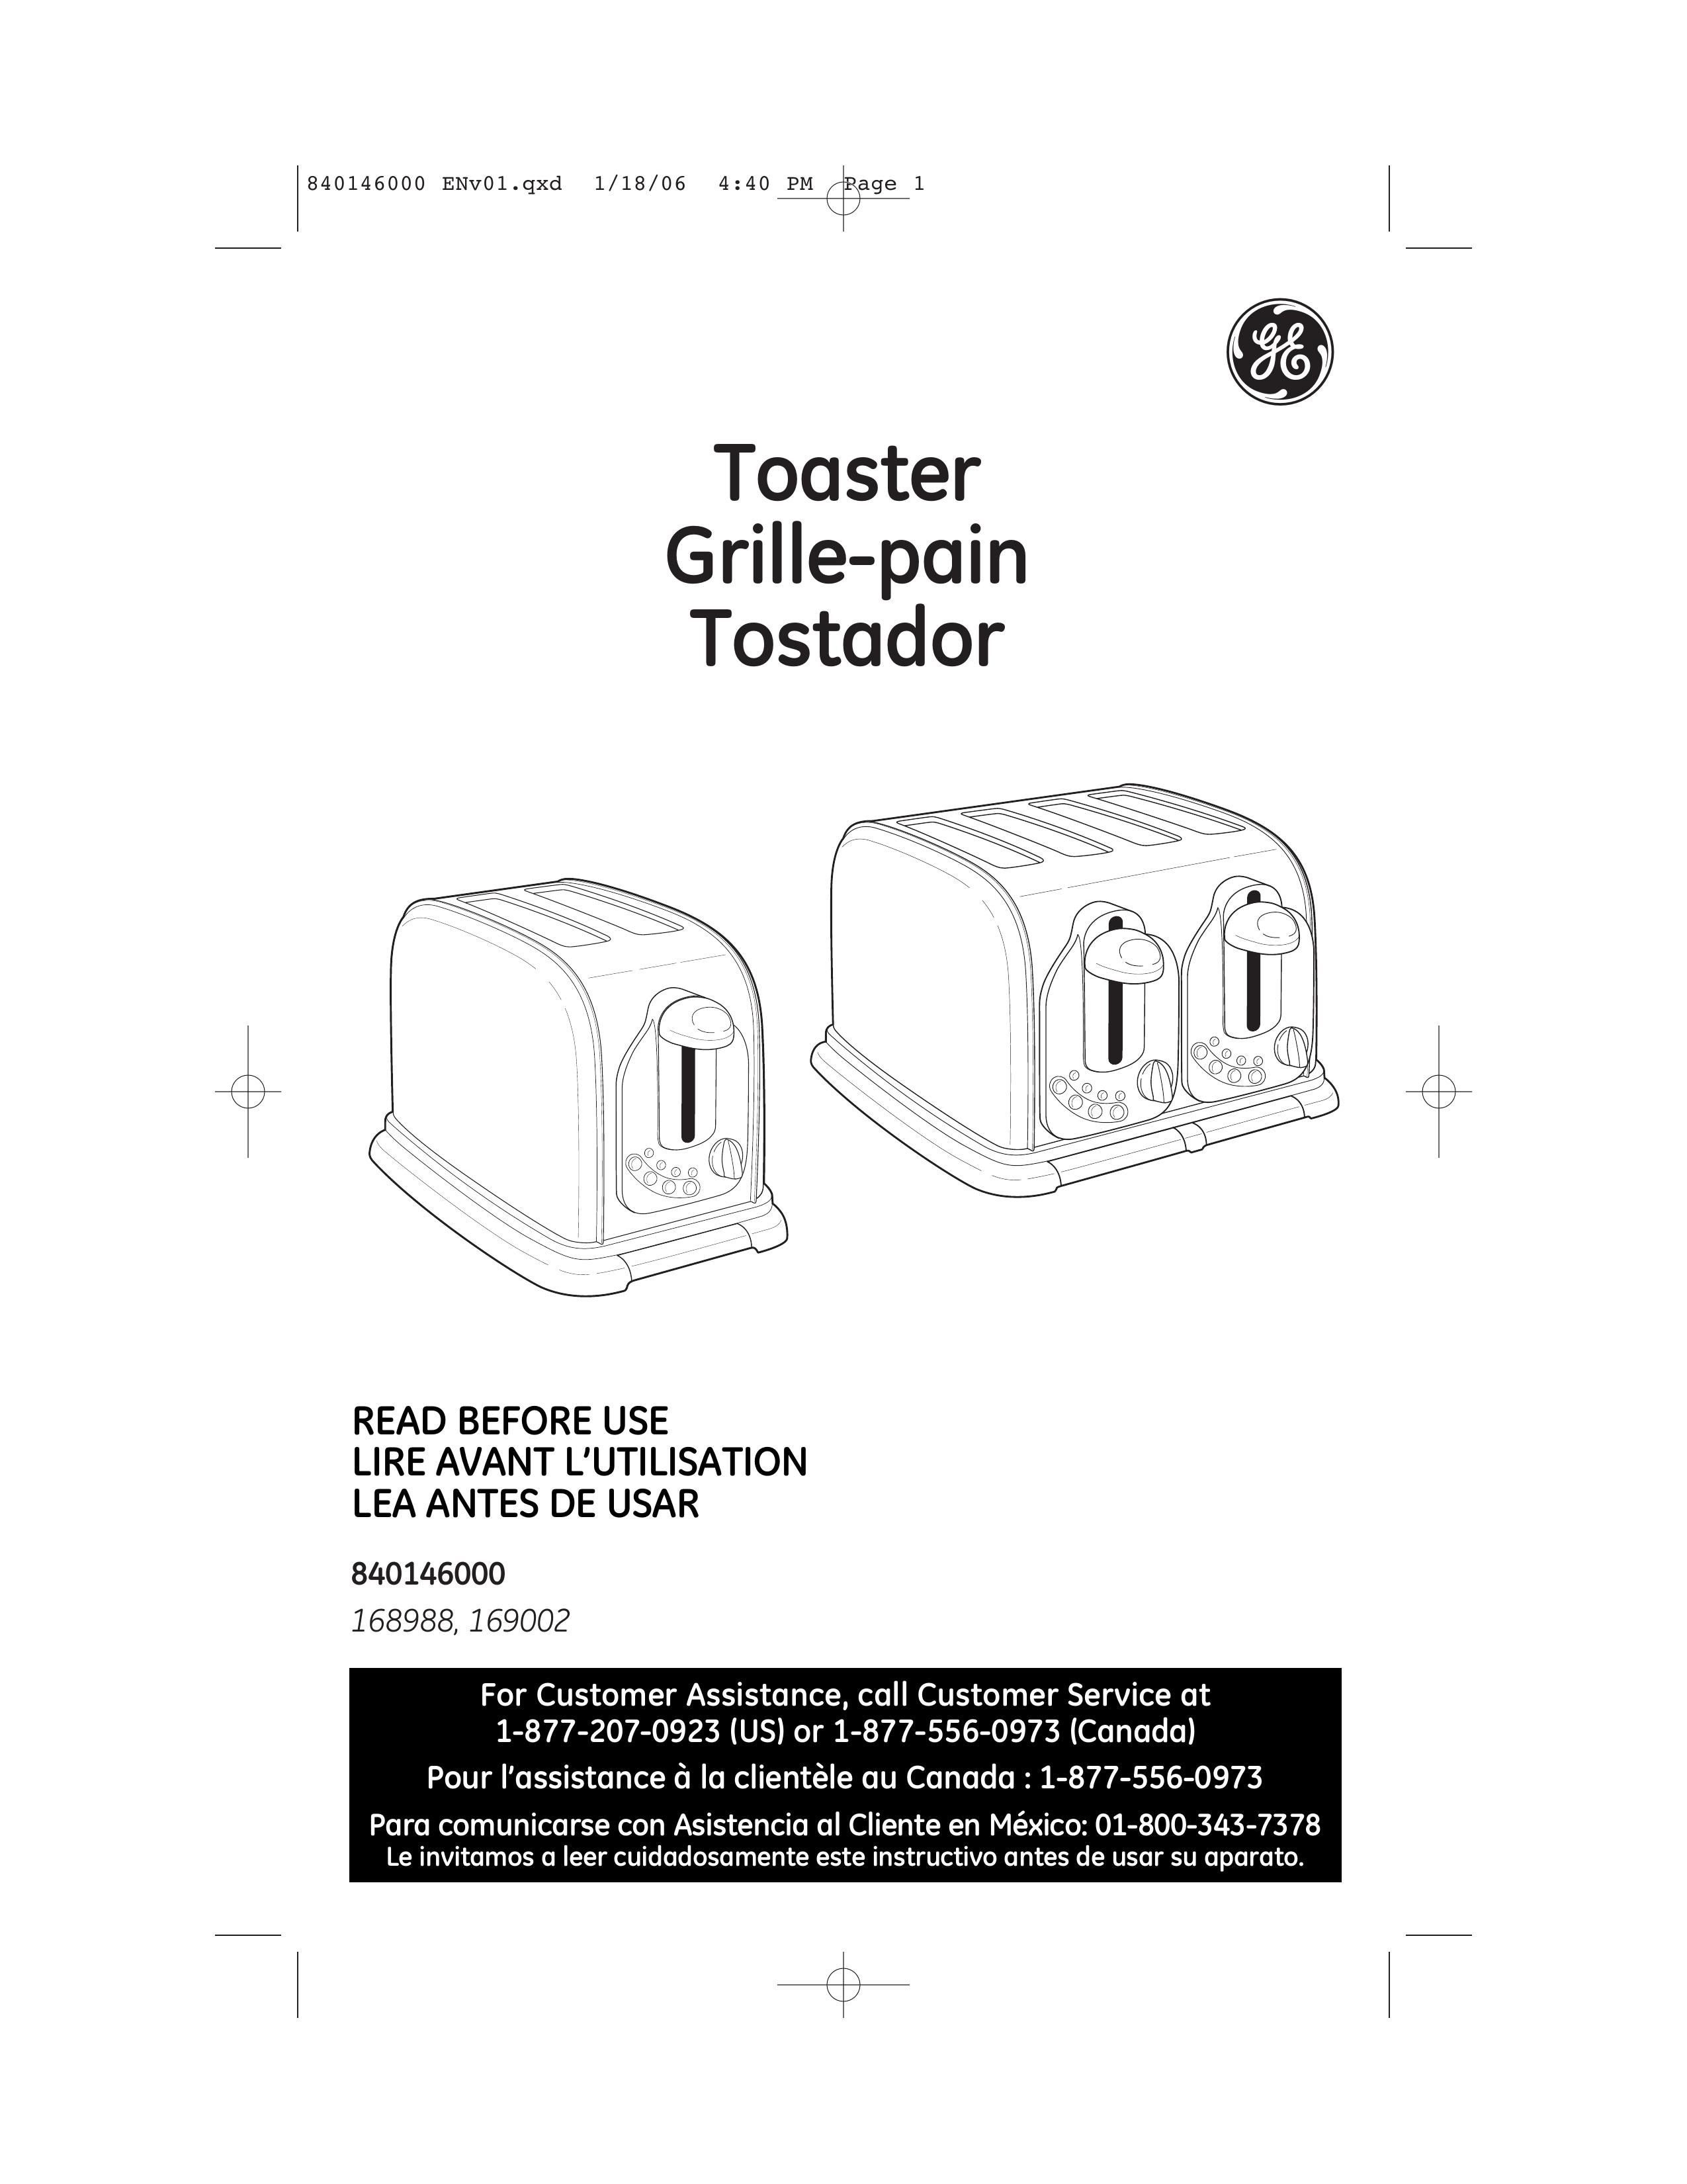 GE 169002 Toaster User Manual